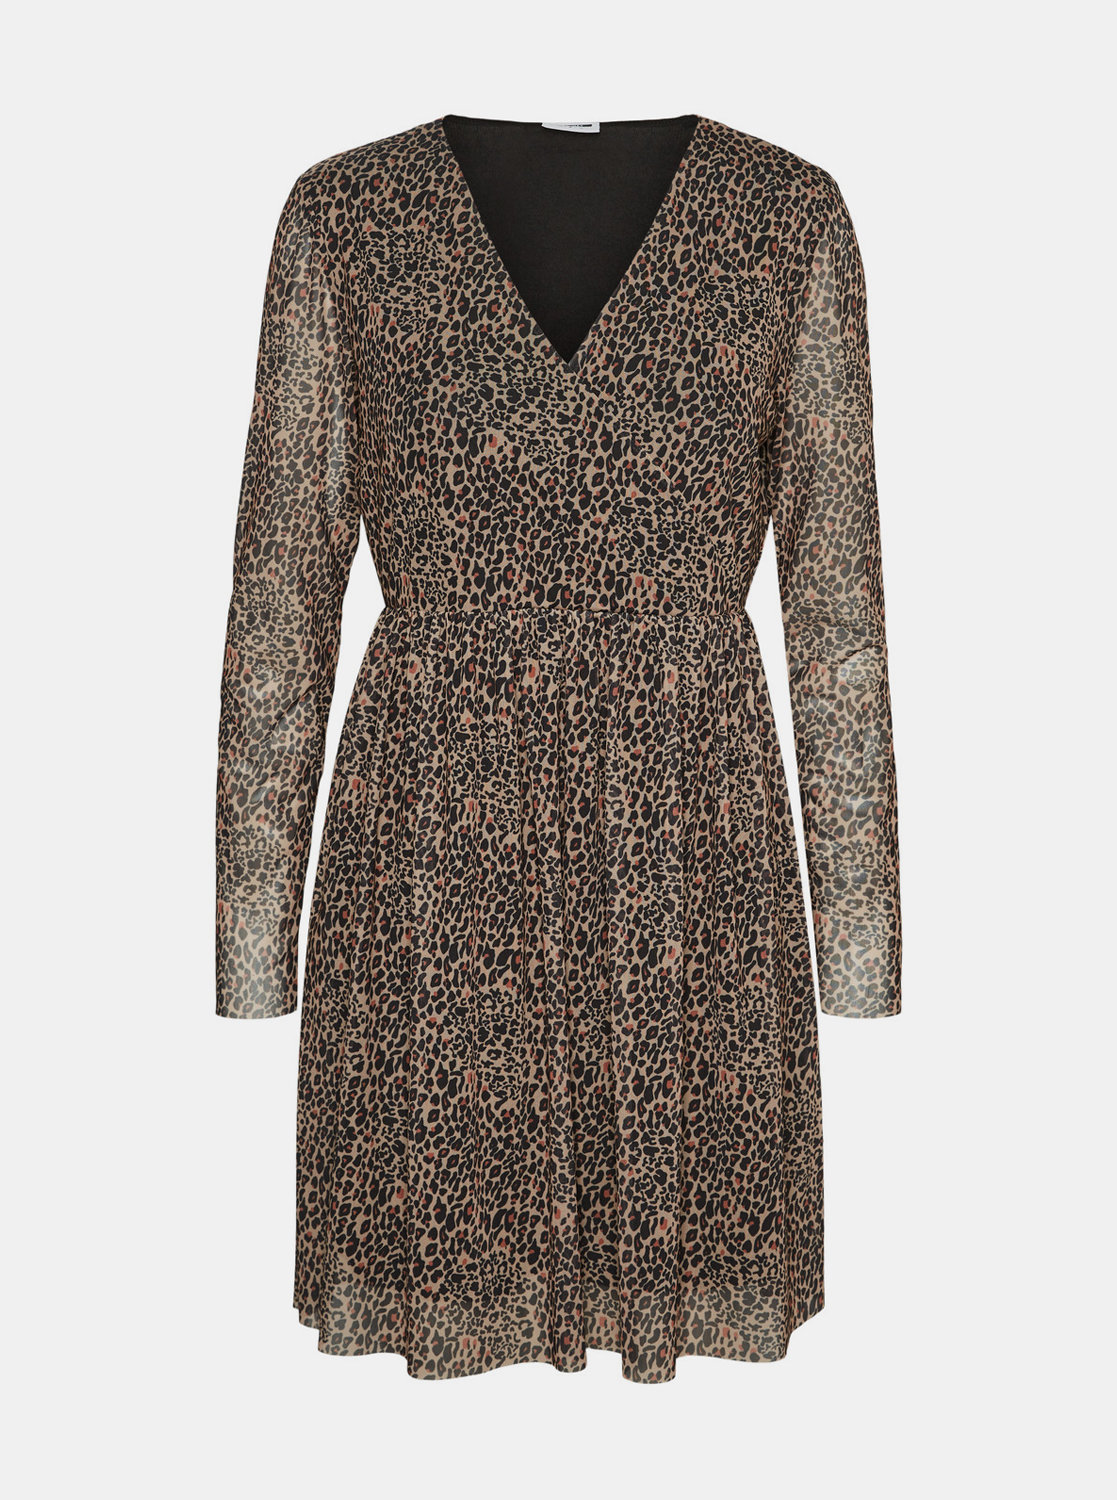 Fotografie Béžové šaty s leopardím vzorem Noisy May Lesly